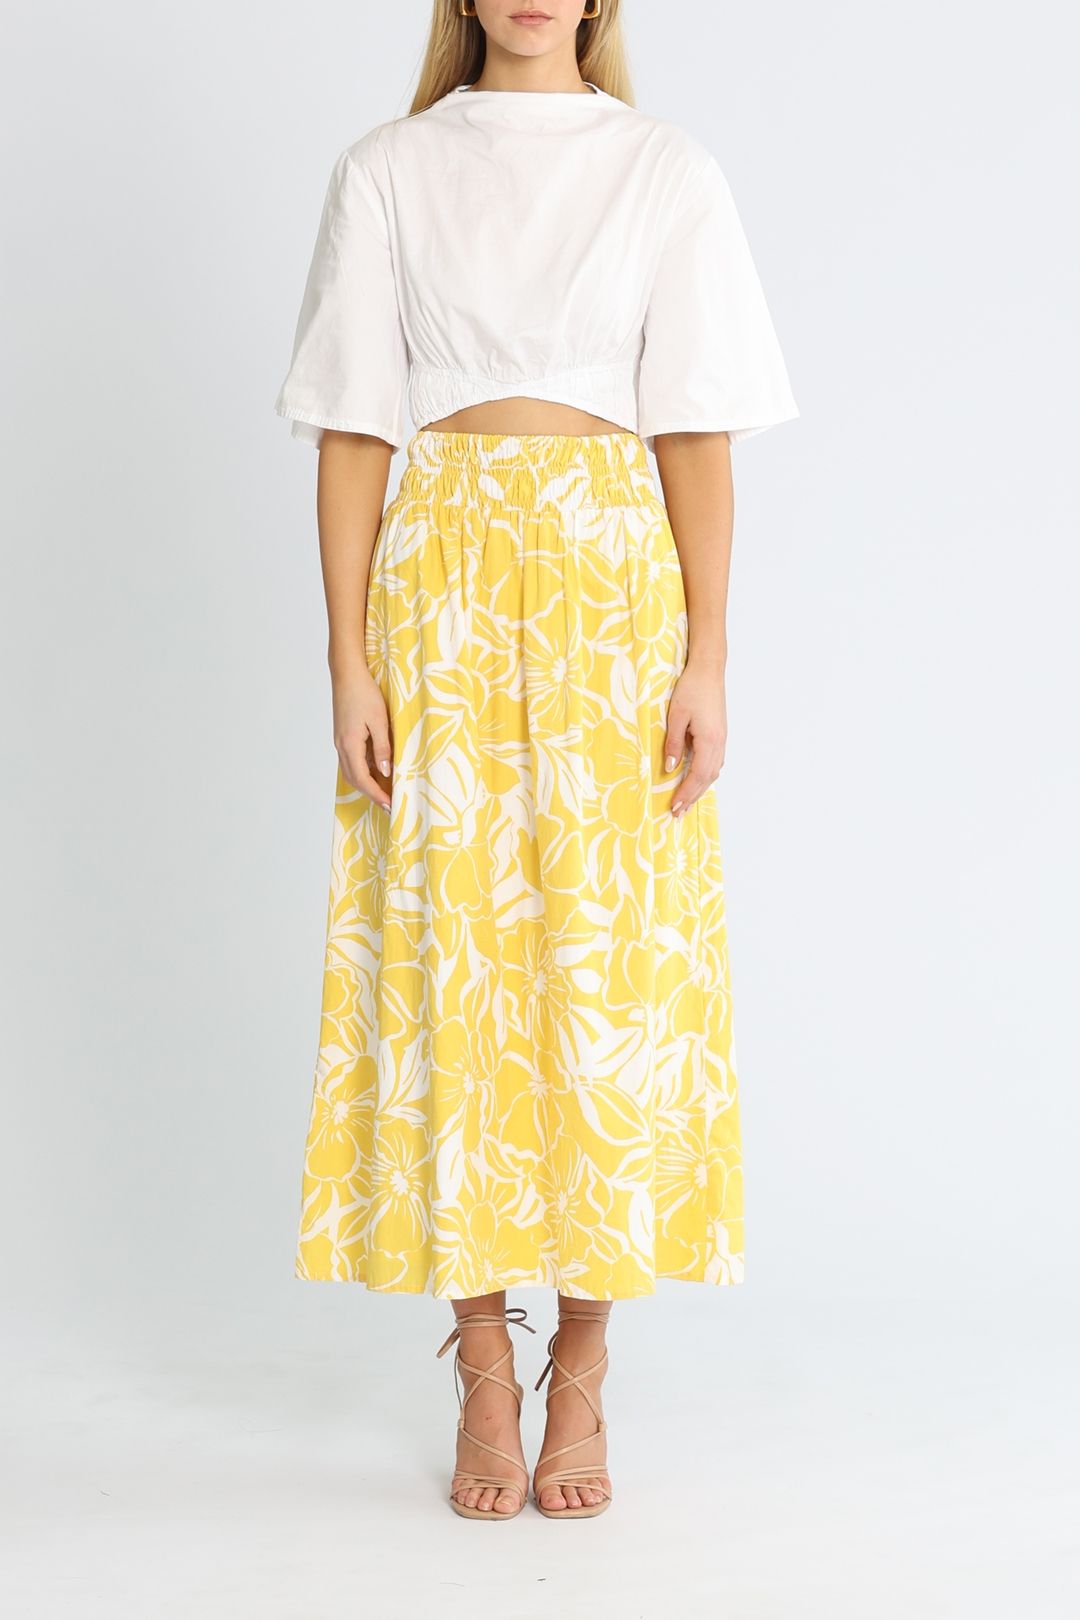 Faithfull Kiera Skirt Yellow